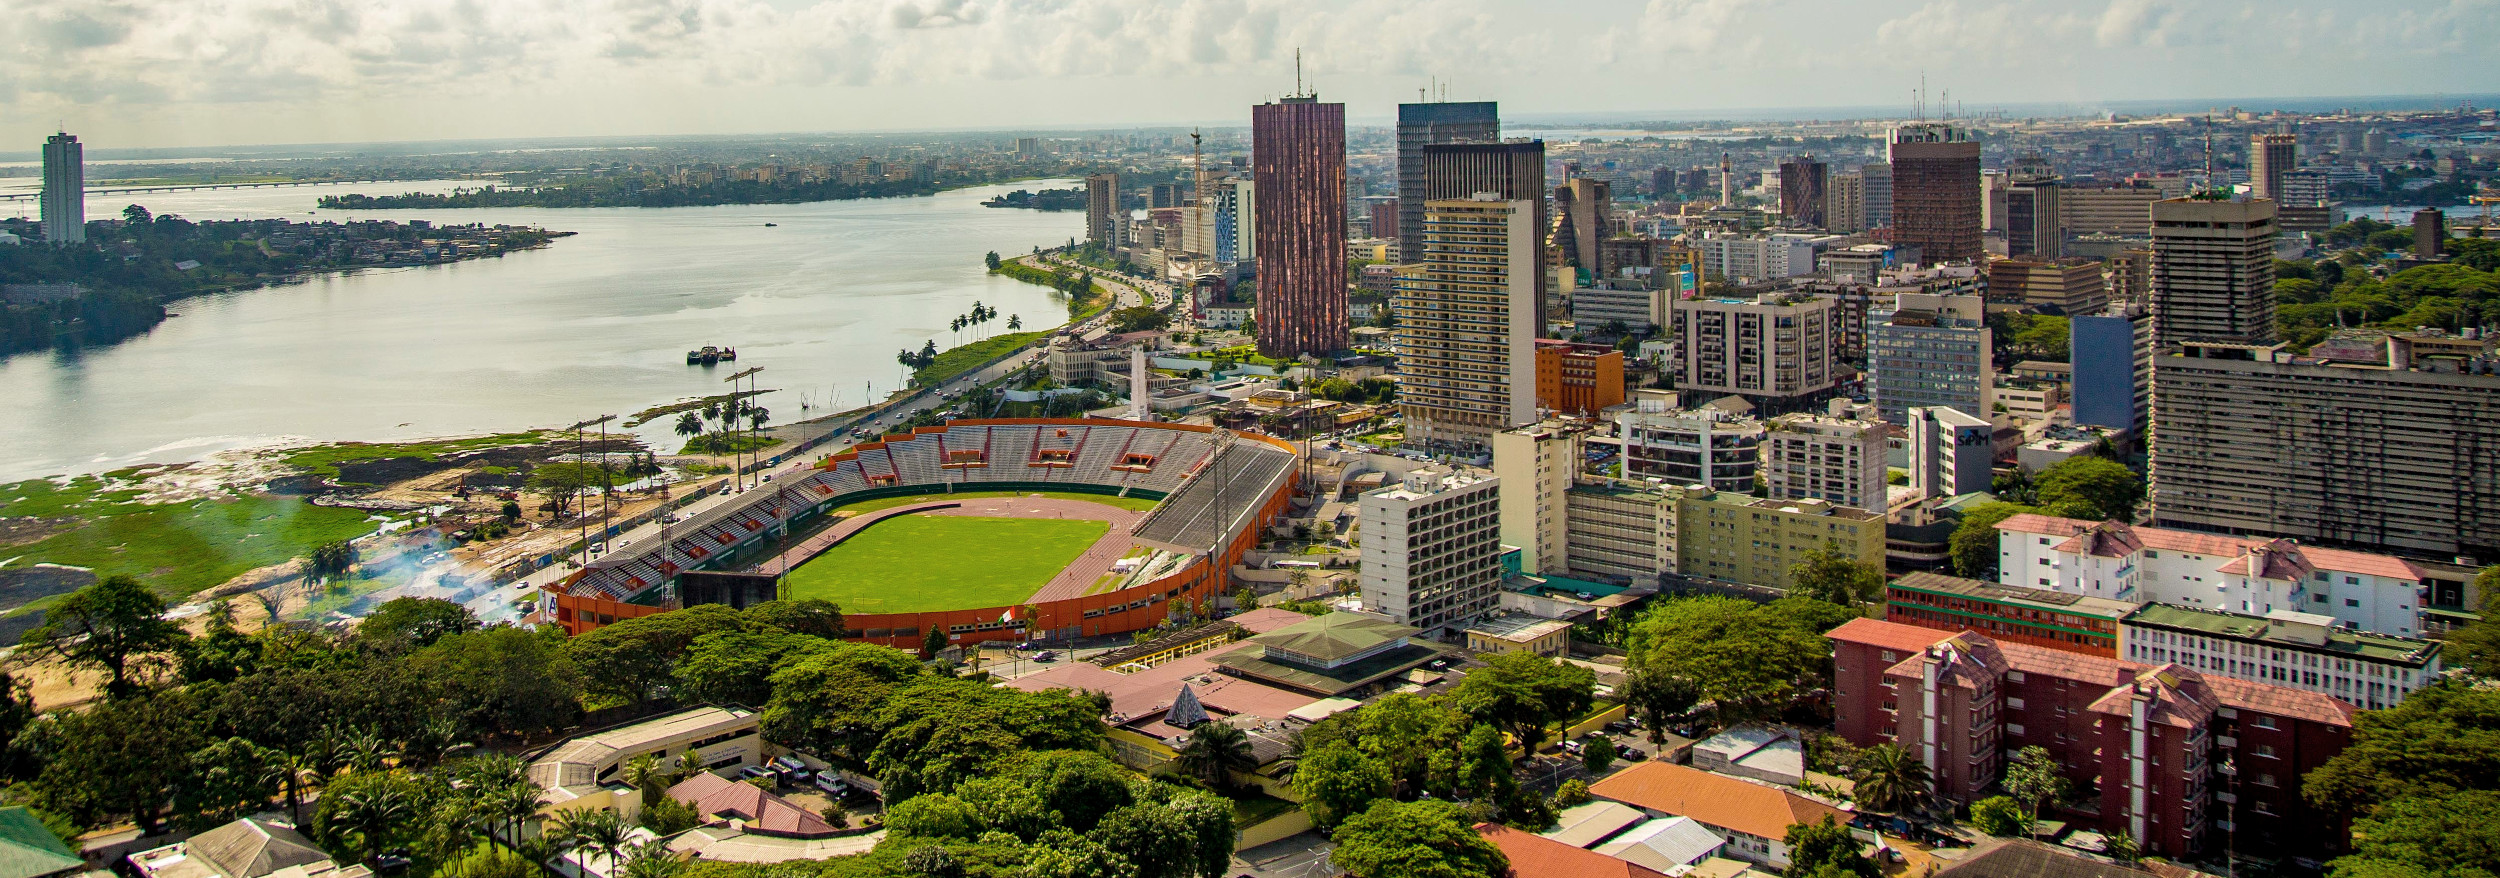 Vue d'Abidjan, stade FHB, baie de Cocody et sud du Plateau